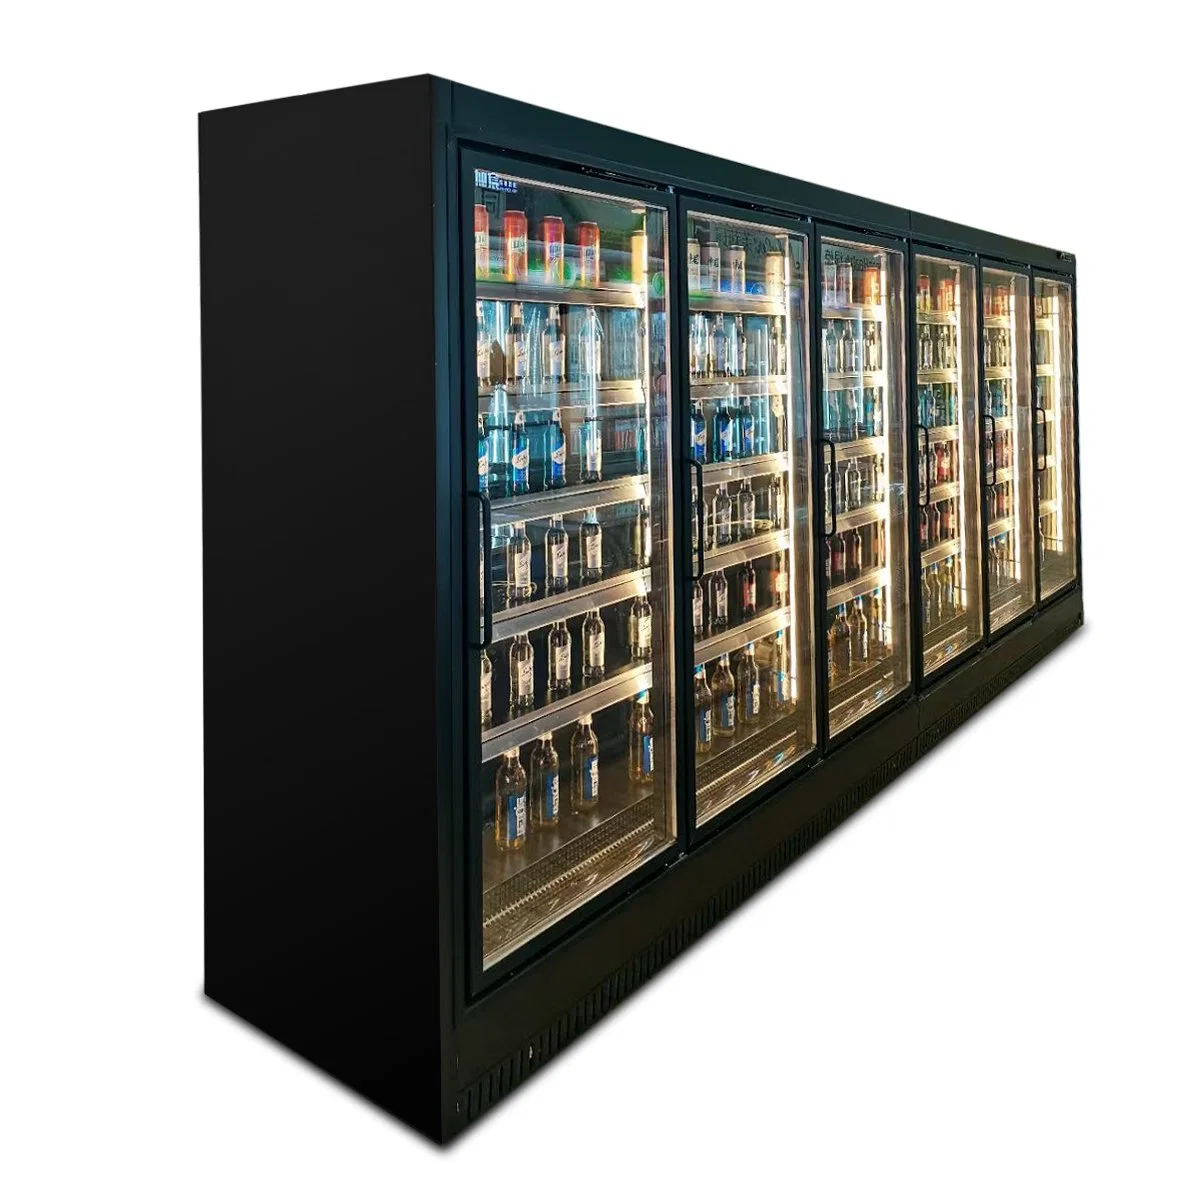 Hocheffiziente Multi-Deck Geschlossene Display Kältemaschine Gefrierschrank Gewerbliche Kühlgeräte Für Supermarkt und Geschäft